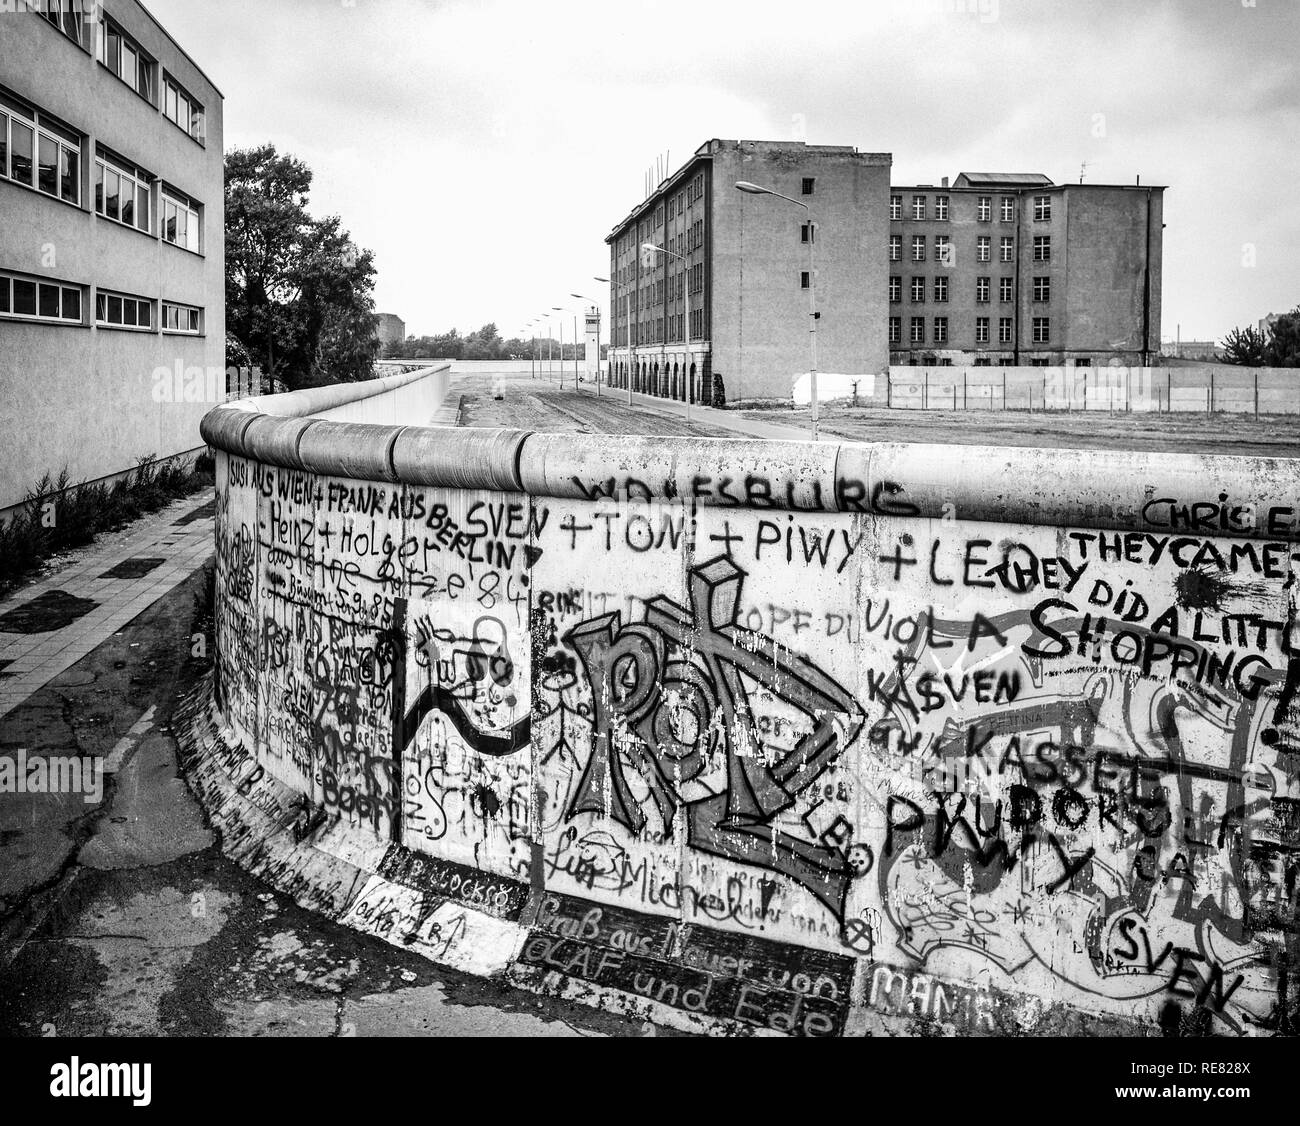 August 1986, Berlin Wall graffitis, death strip zone, East Berlin buildings, West Berlin side, Germany, Europe, Stock Photo